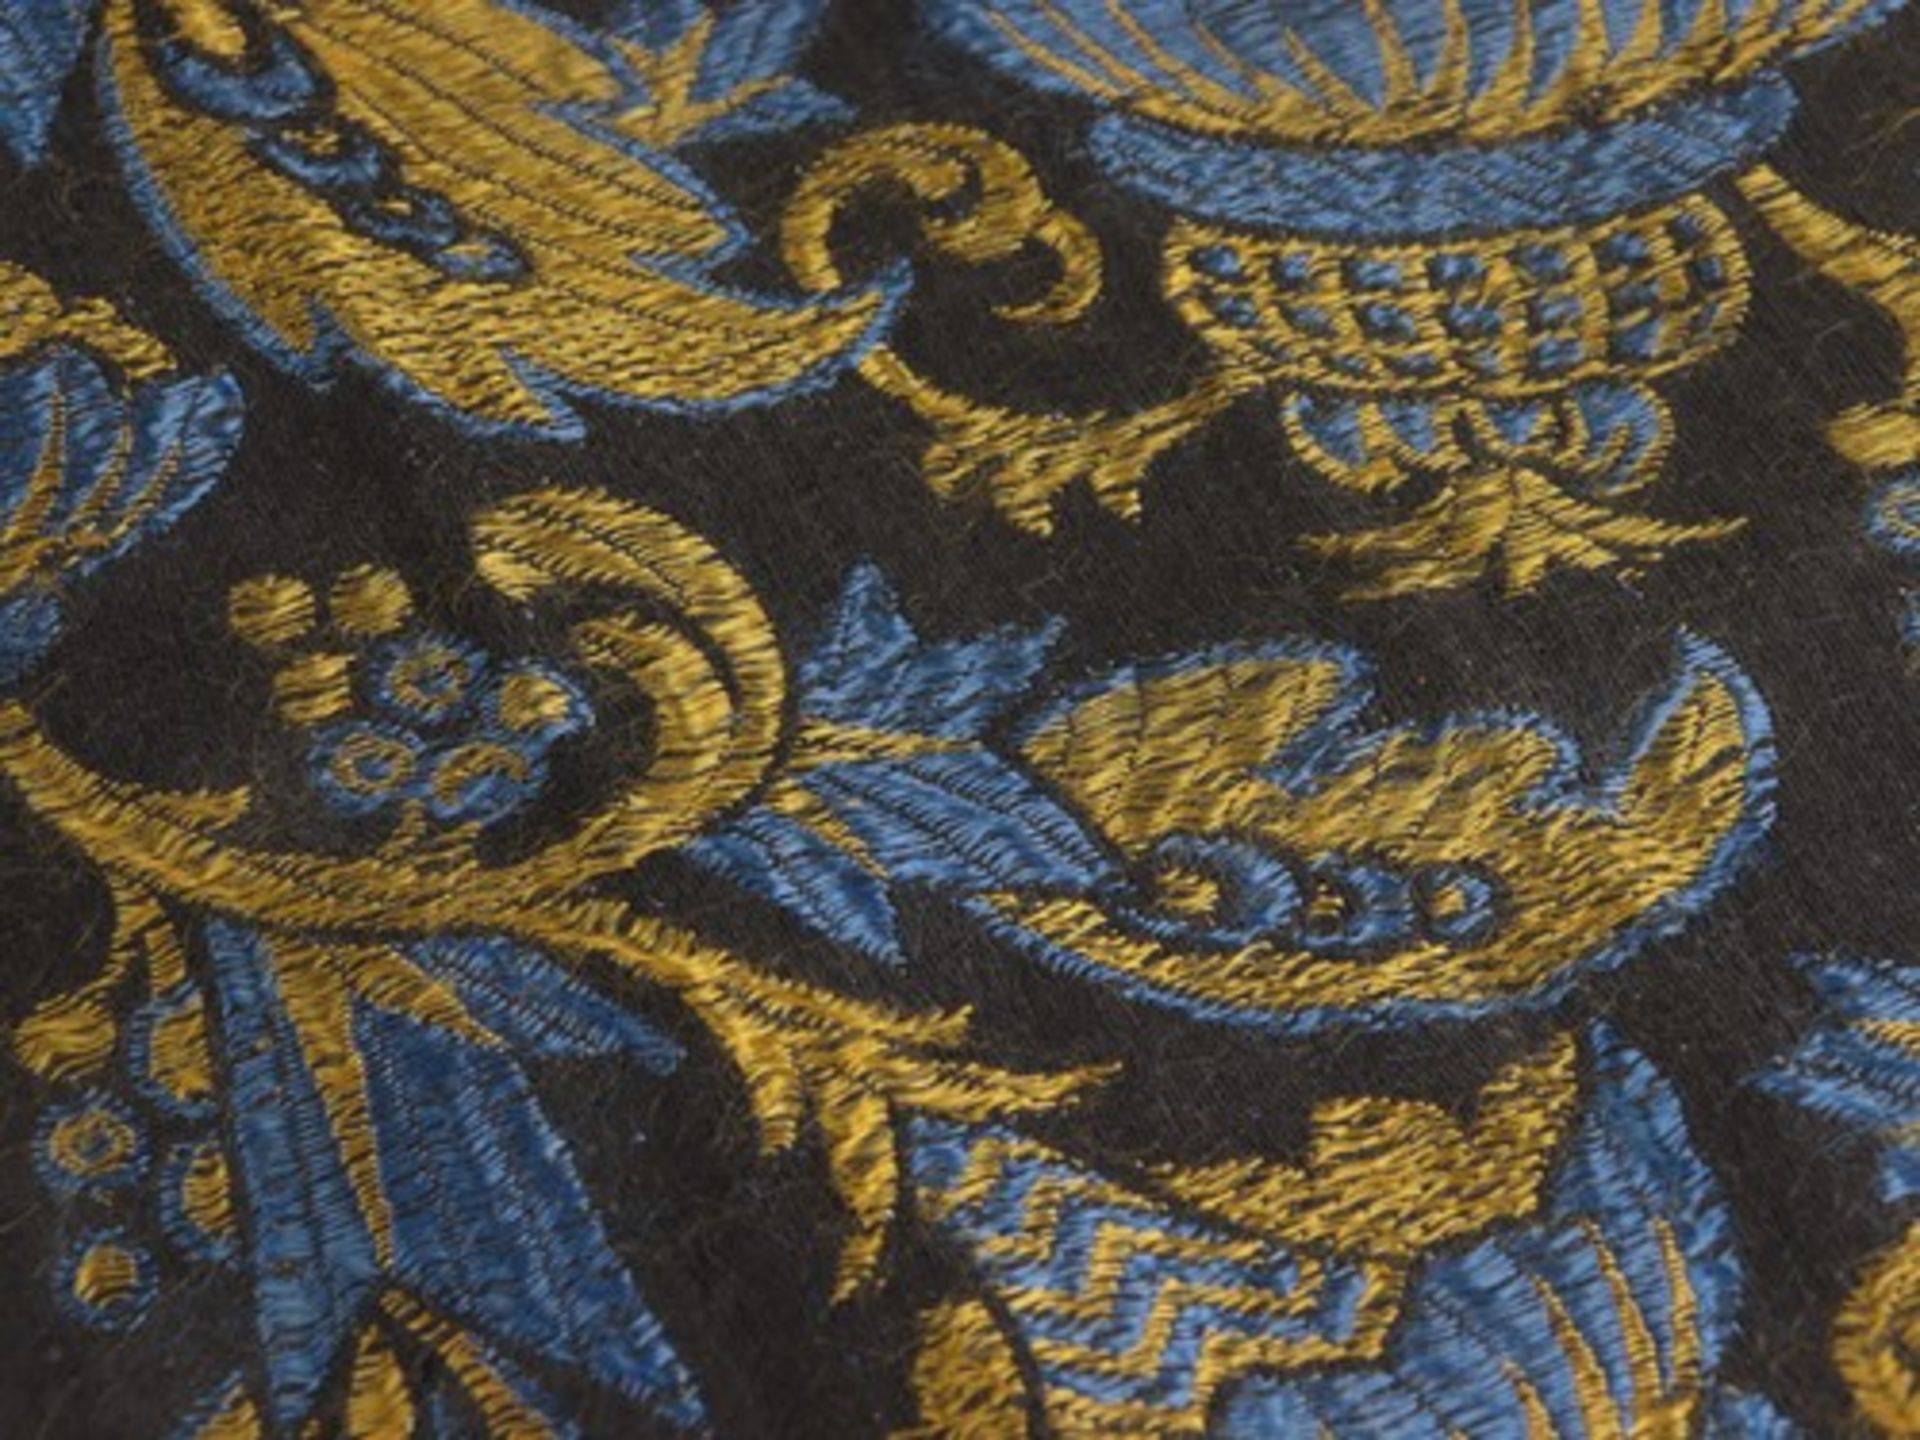 Tischdecke - Art-découm 1920, schwarz, gold, blau, orientalisch anmutendes florales Muster, - Image 2 of 3